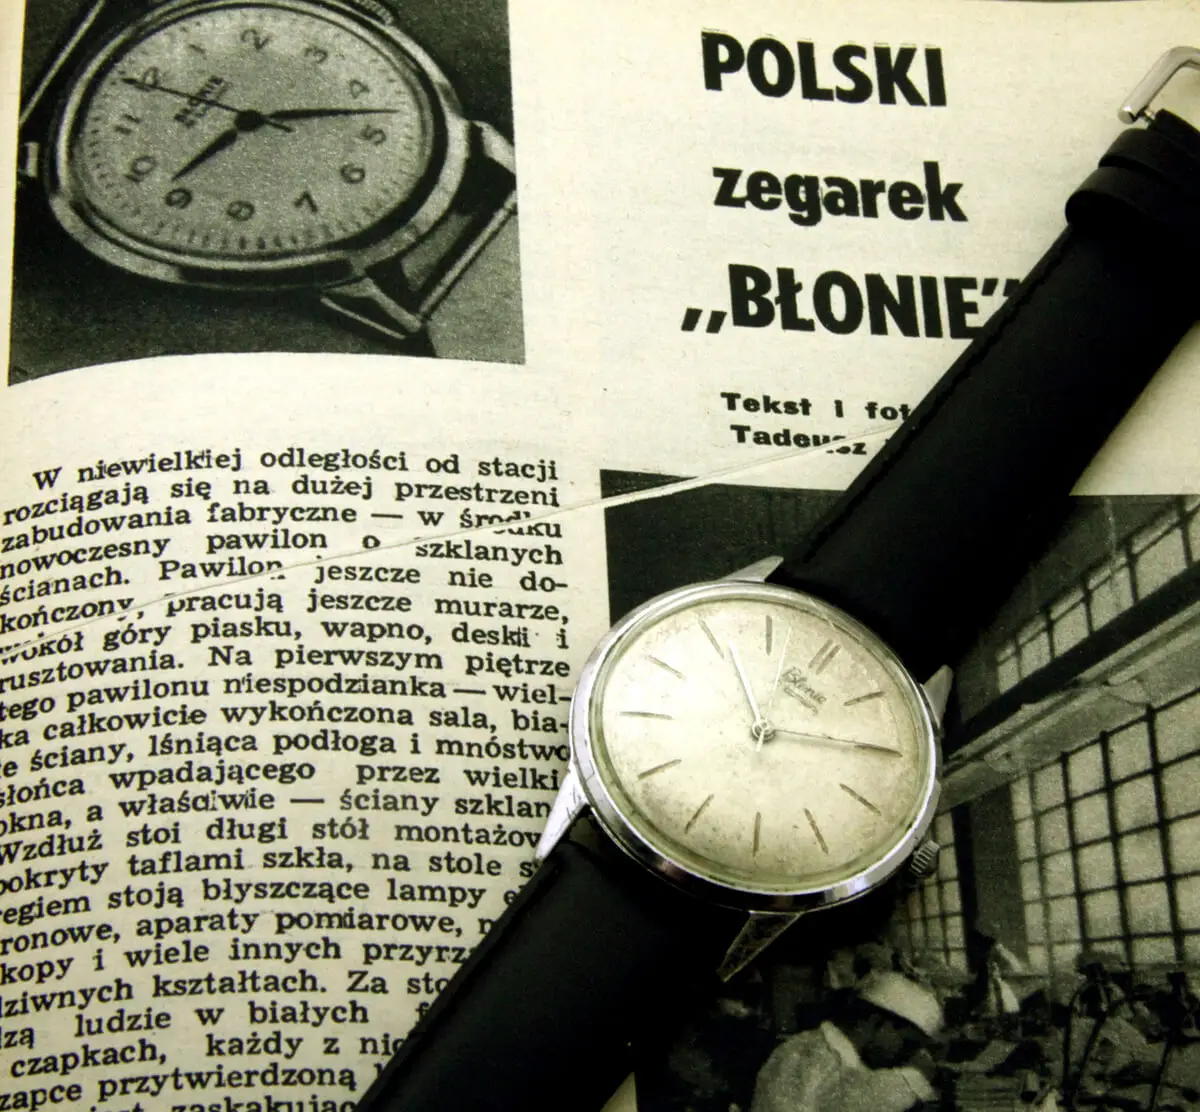 Zegarek Błonie